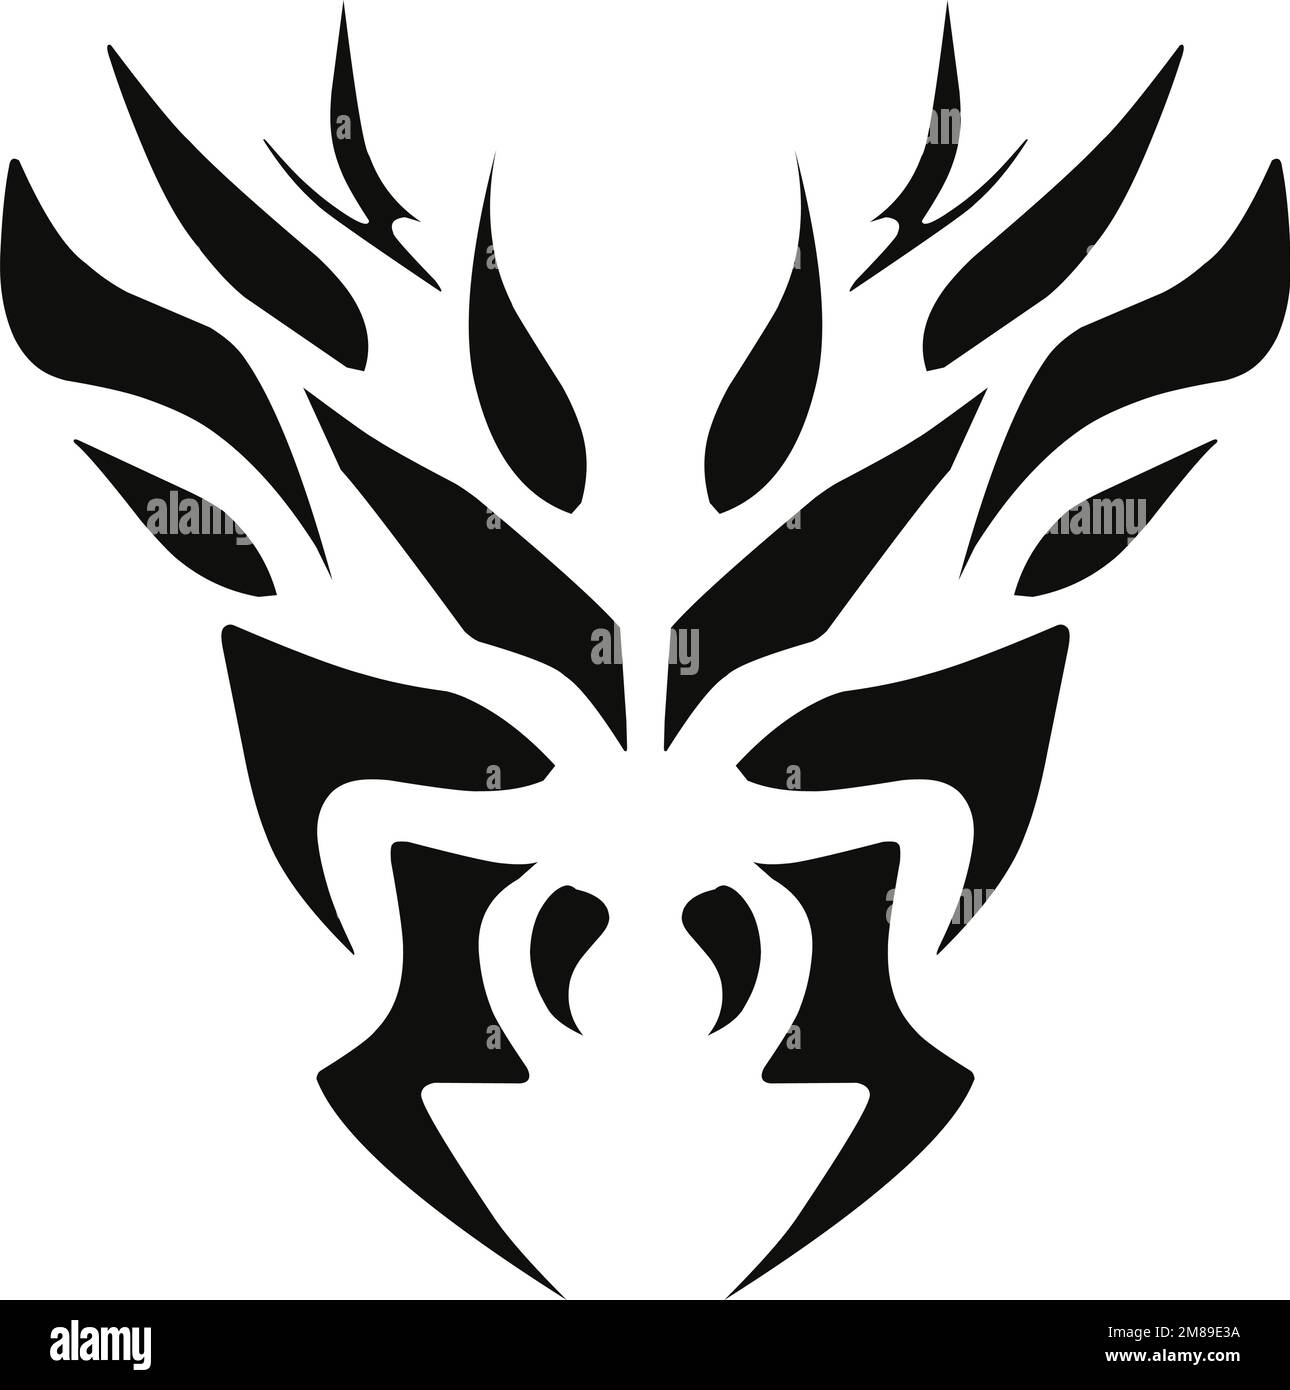 Kamen Rider Pyrox Logo by raidenzein on DeviantArt